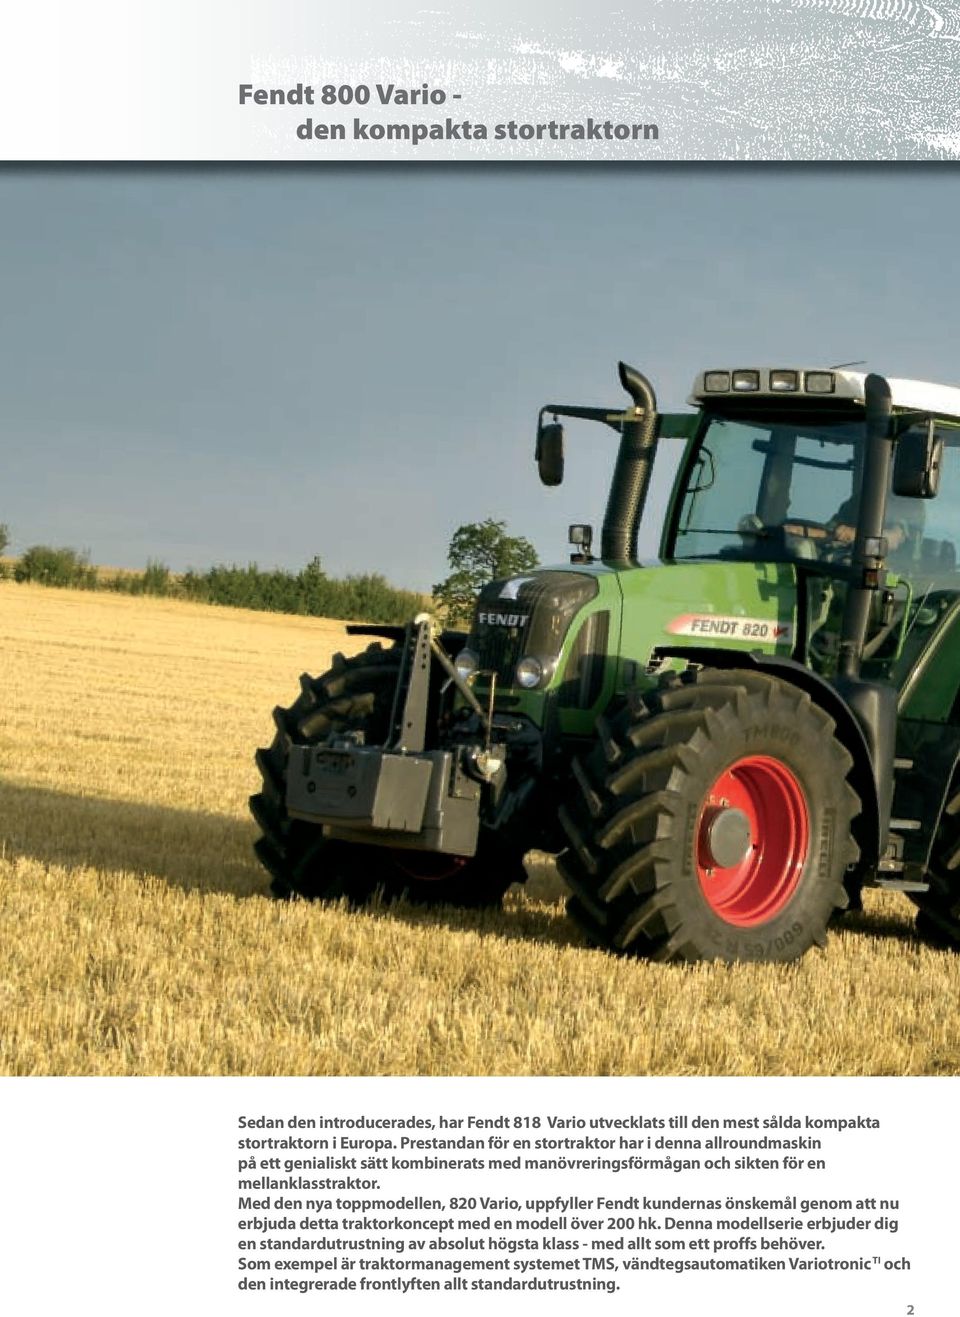 Med den nya toppmodellen, 820 Vario, uppfyller Fendt kundernas önskemål genom att nu erbjuda detta traktorkoncept med en modell över 200 hk.